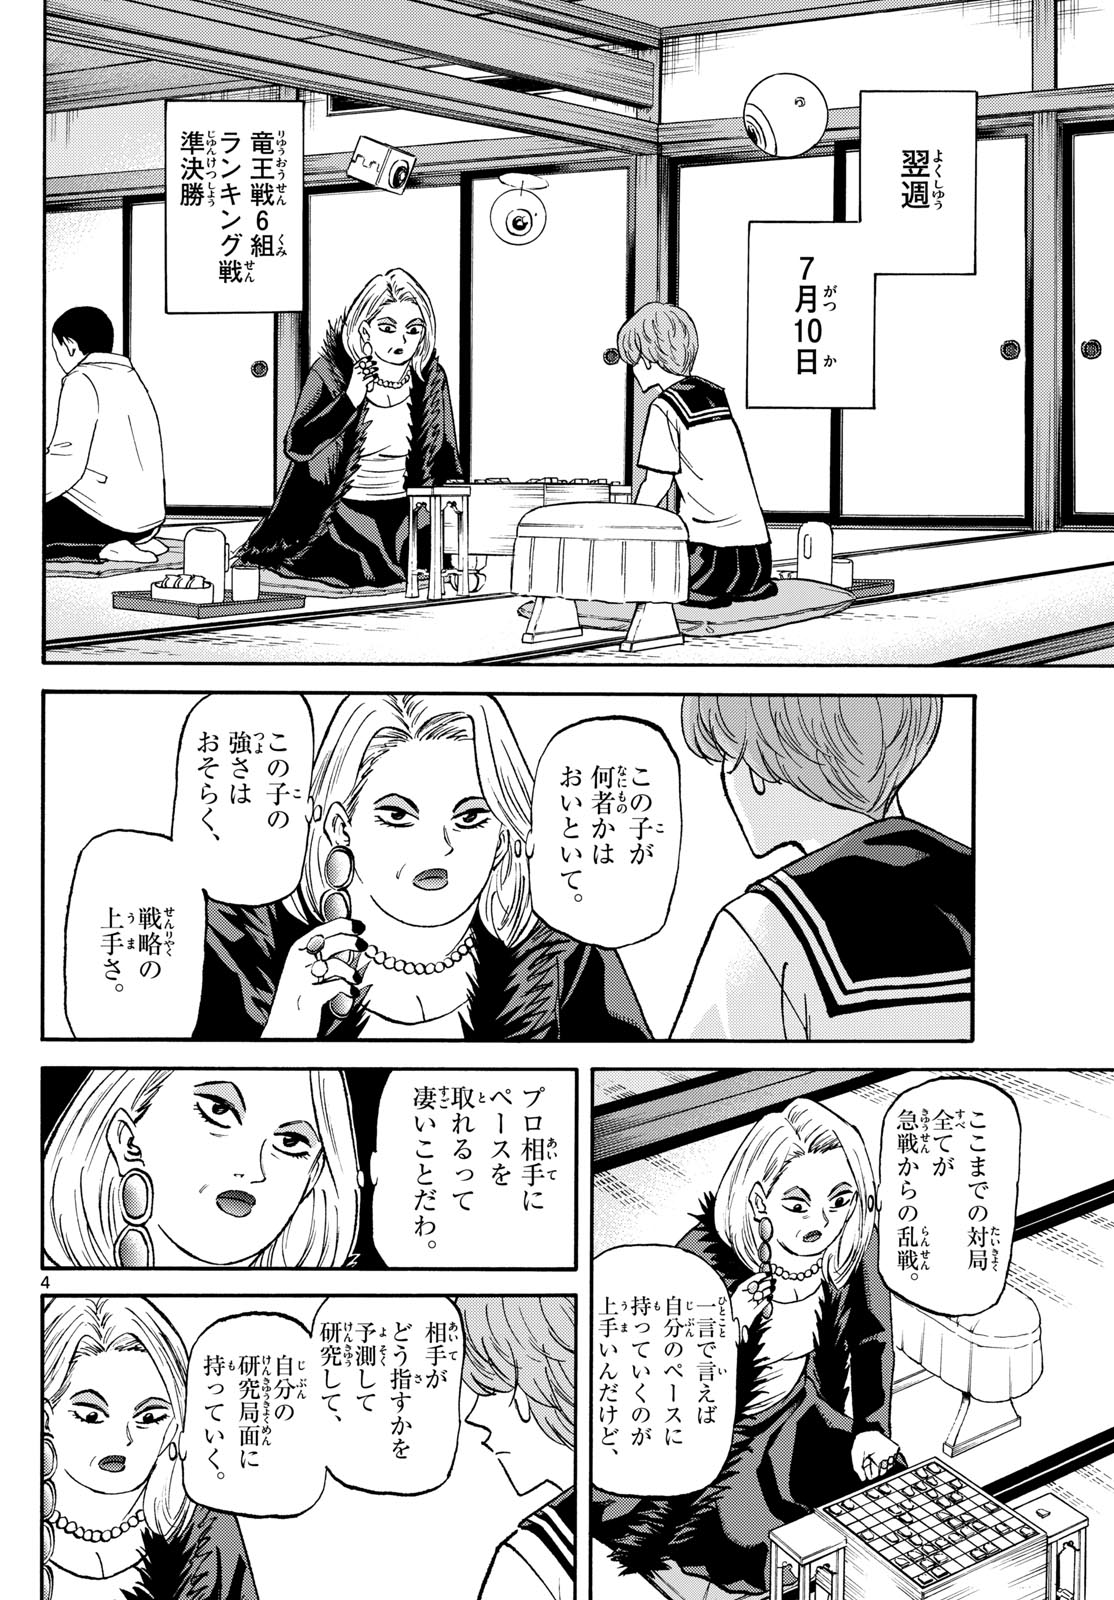 Tatsu to Ichigo - Chapter 192 - Page 4